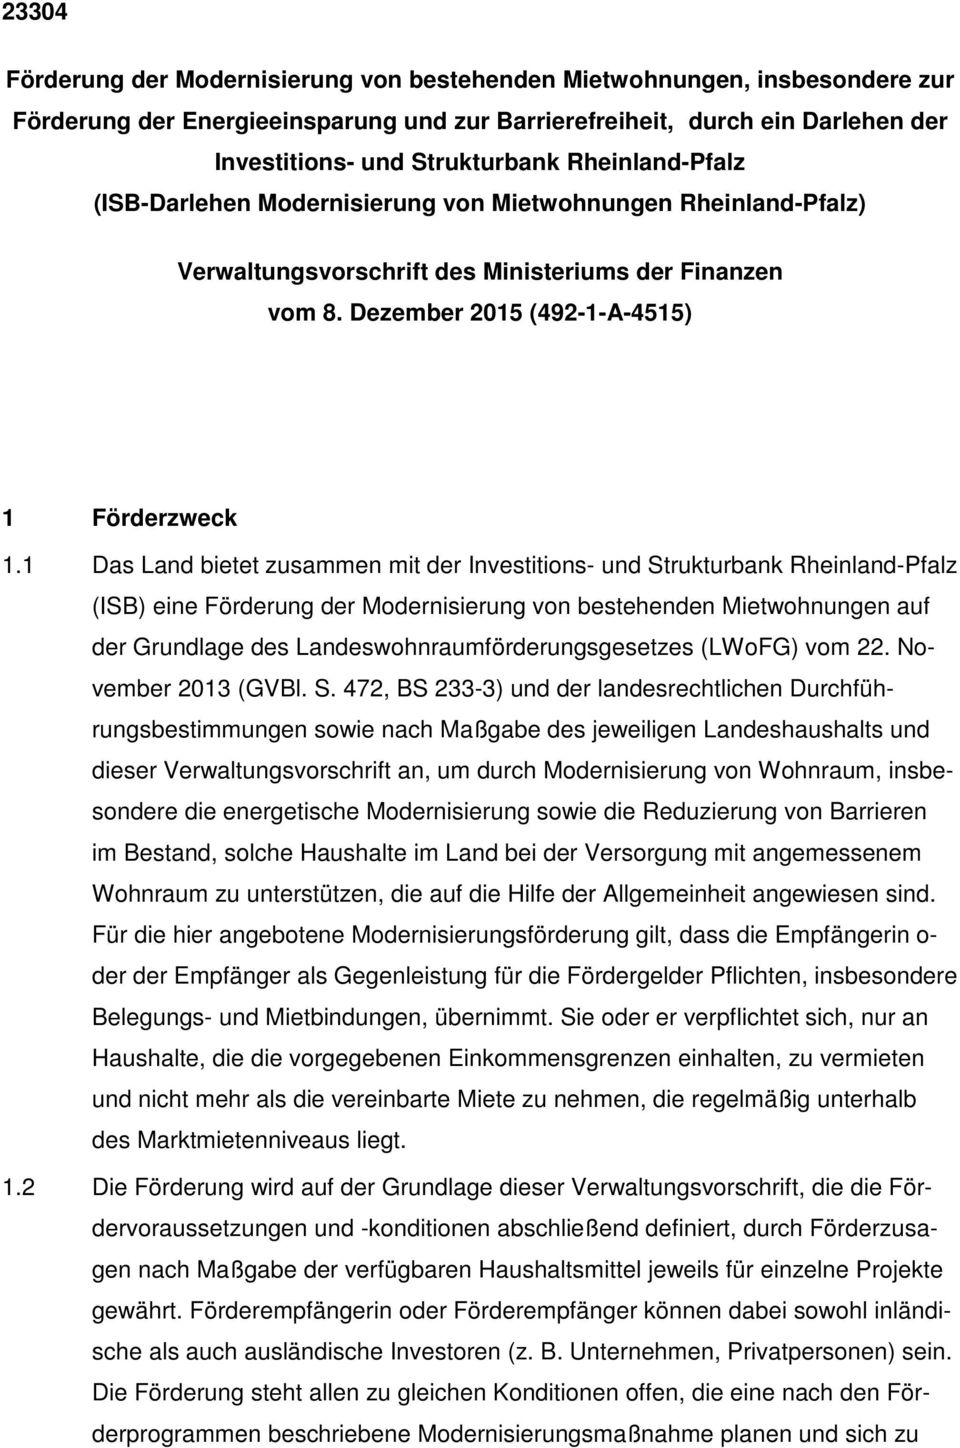 1 Das Land bietet zusammen mit der Investitions- und Strukturbank Rheinland-Pfalz (ISB) eine Förderung der Modernisierung von bestehenden Mietwohnungen auf der Grundlage des